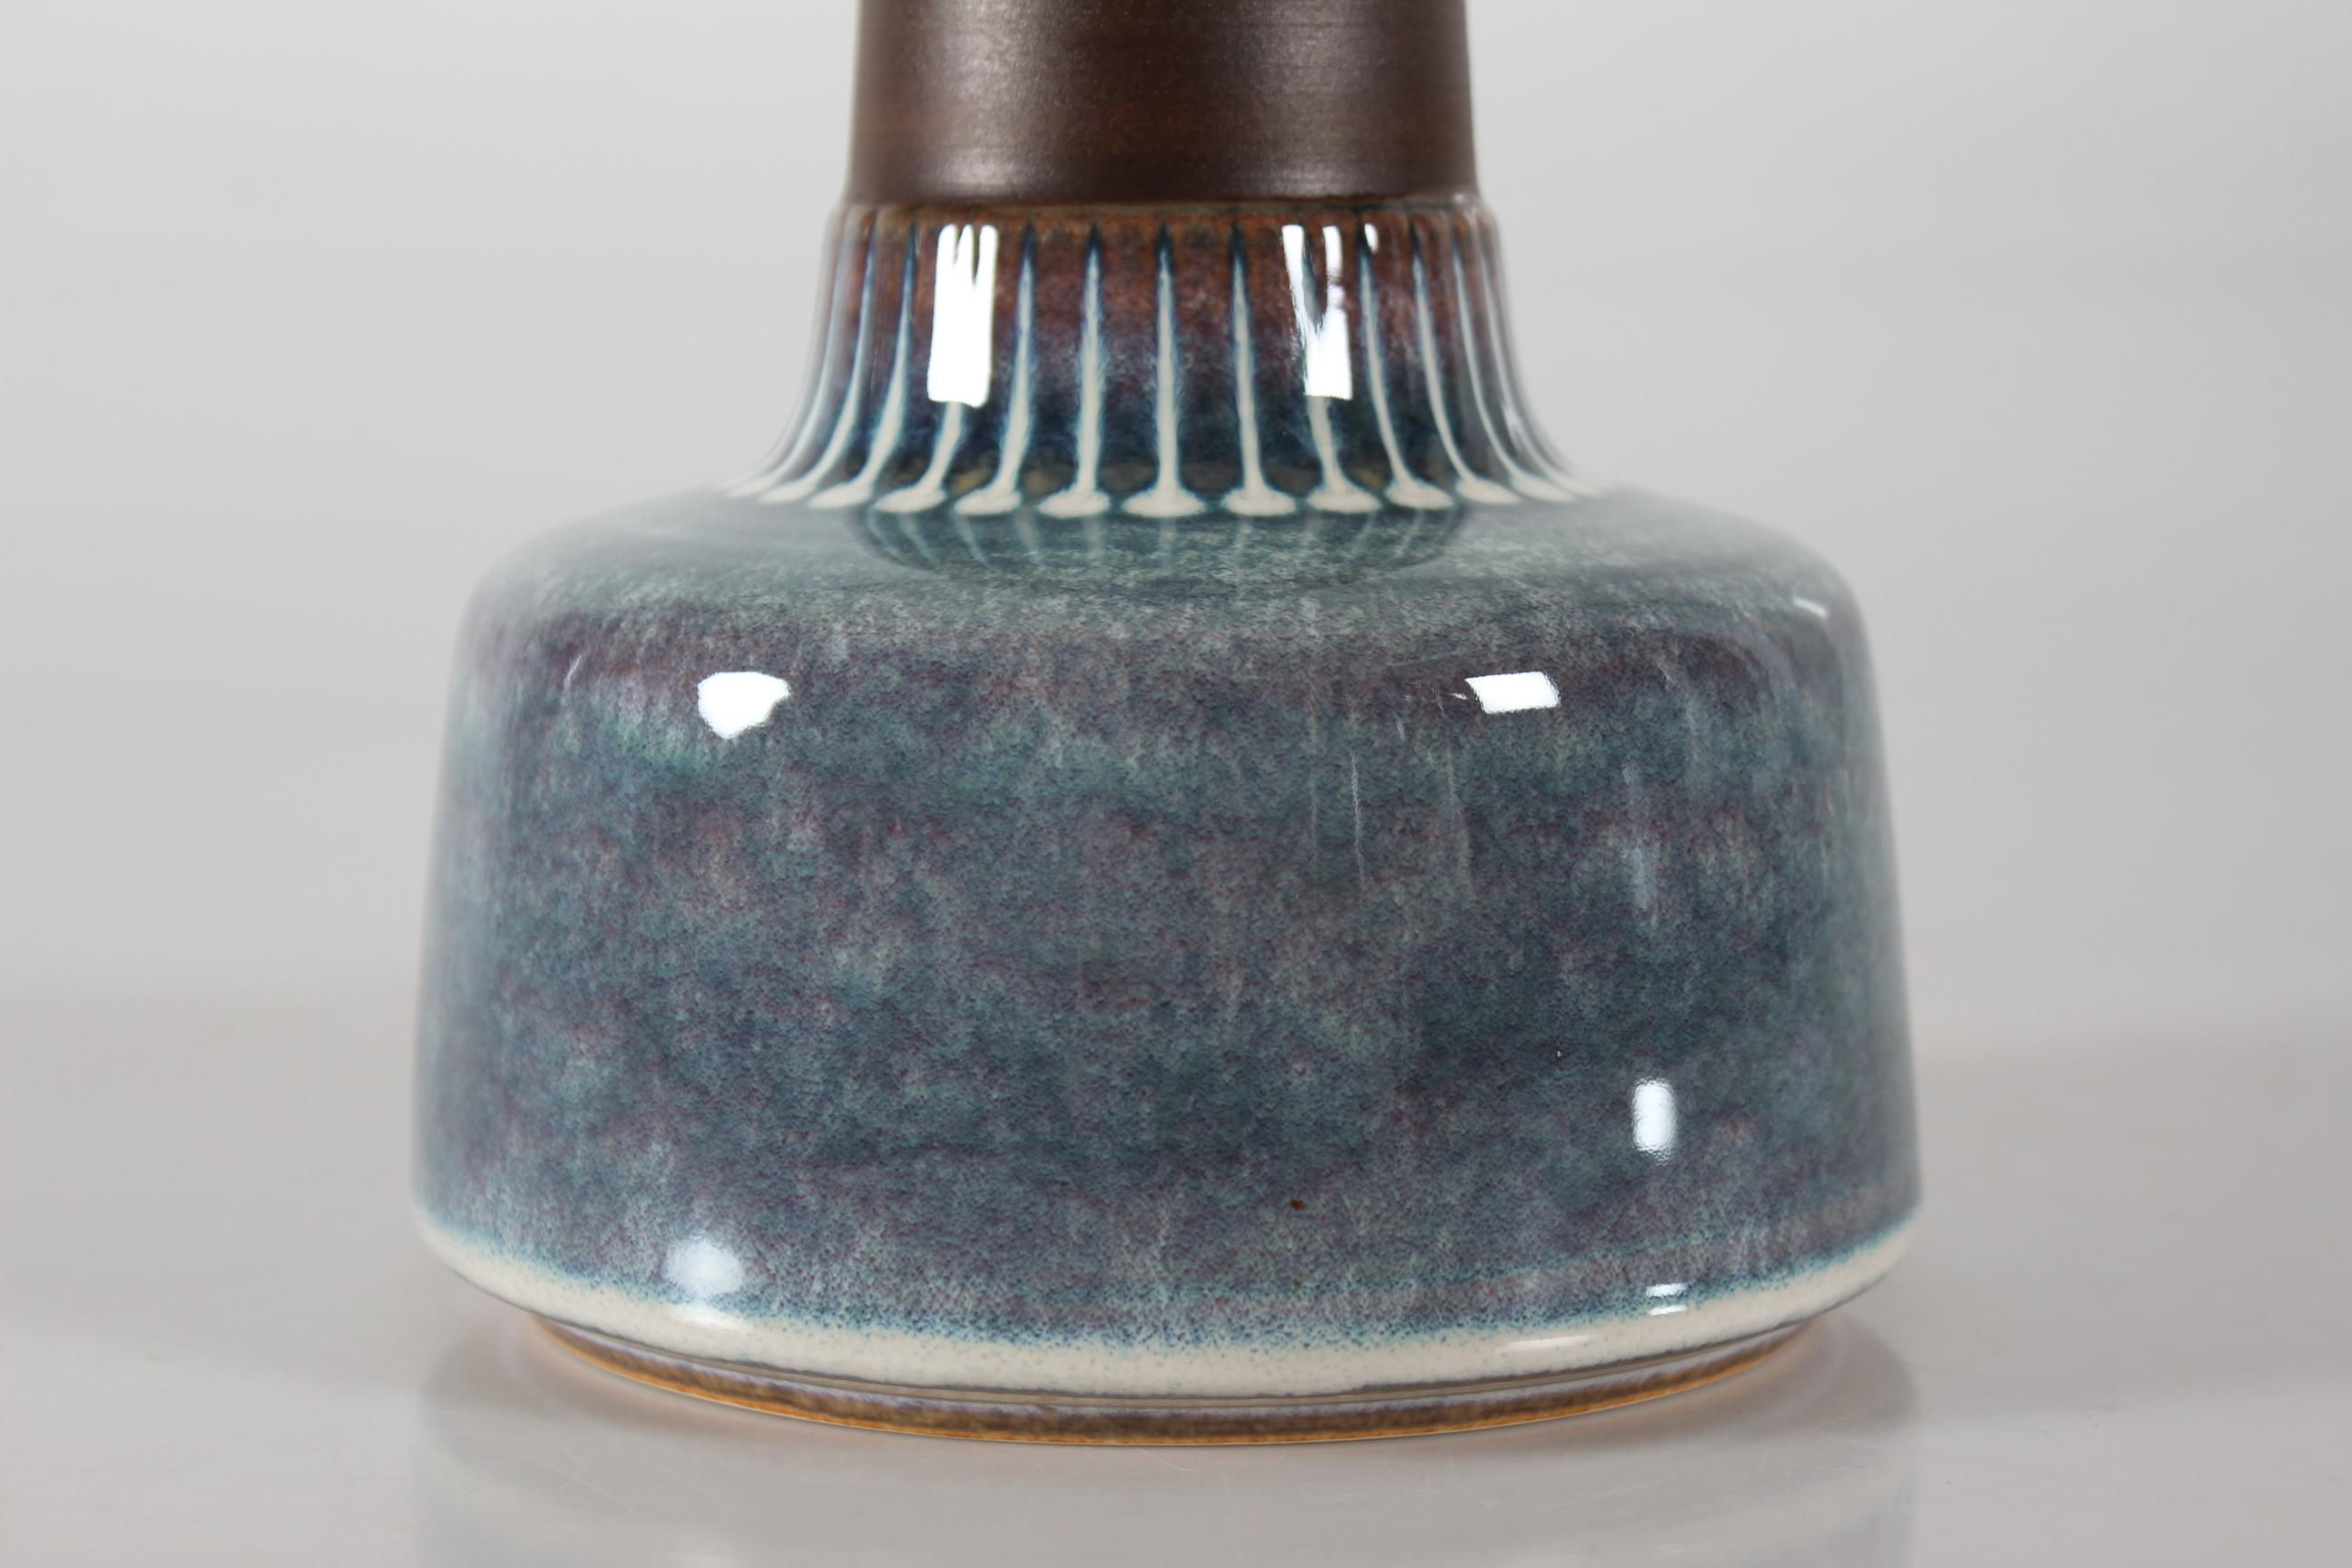 Dänische Tischlampe aus der Mitte des Jahrhunderts vom dänischen Keramiker Einar Johansen für Søholm. Hergestellt in den 1960er Jahren.

Der Lampenfuß hat einen matten braunen Hals, der durch eine glänzende Glasur in Perlmuttfarben und kreisförmige